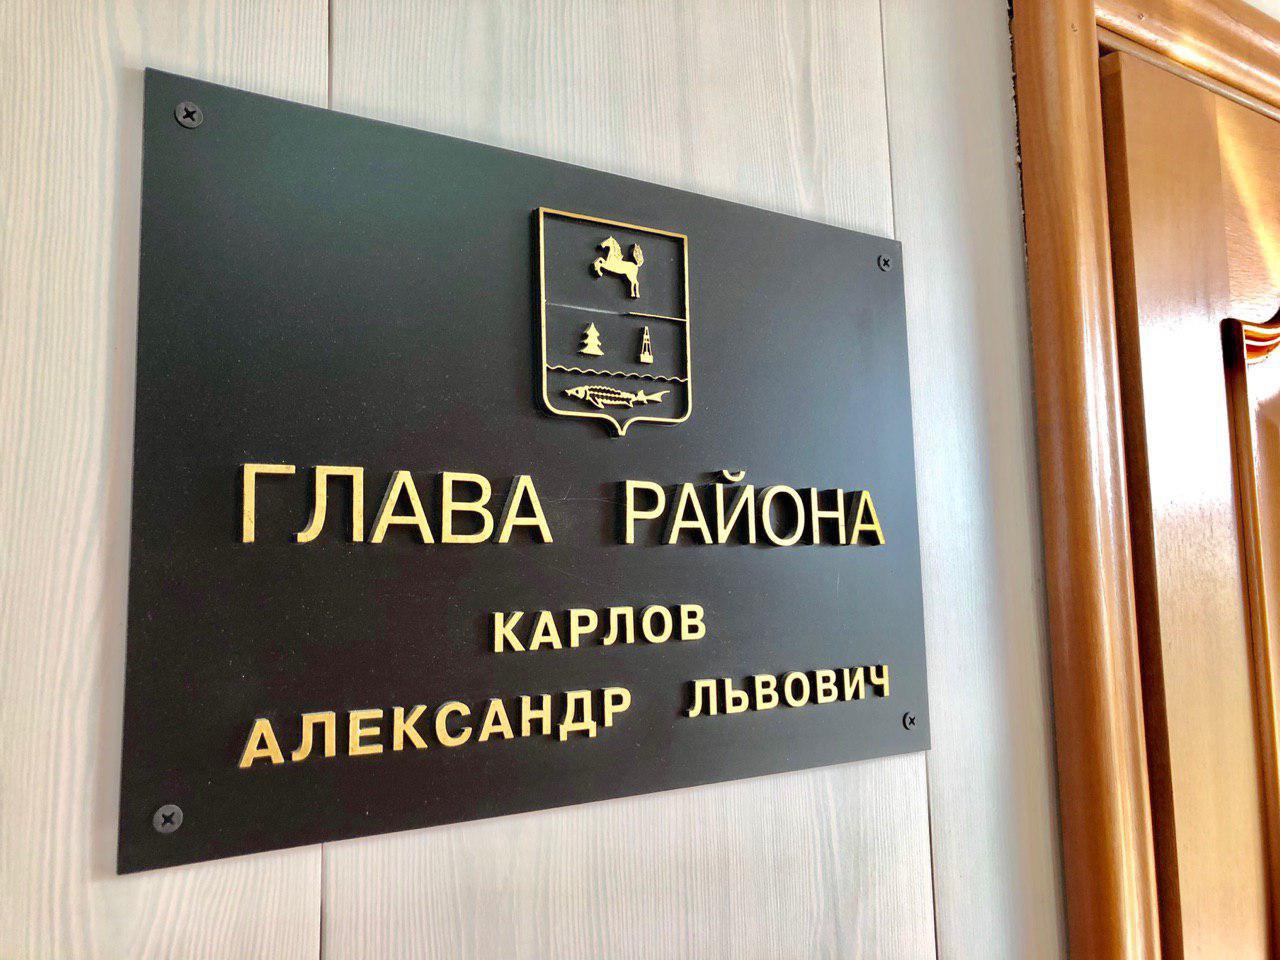 Сегодня глава района Александр Карлов провел совещание с аппаратом администрации.